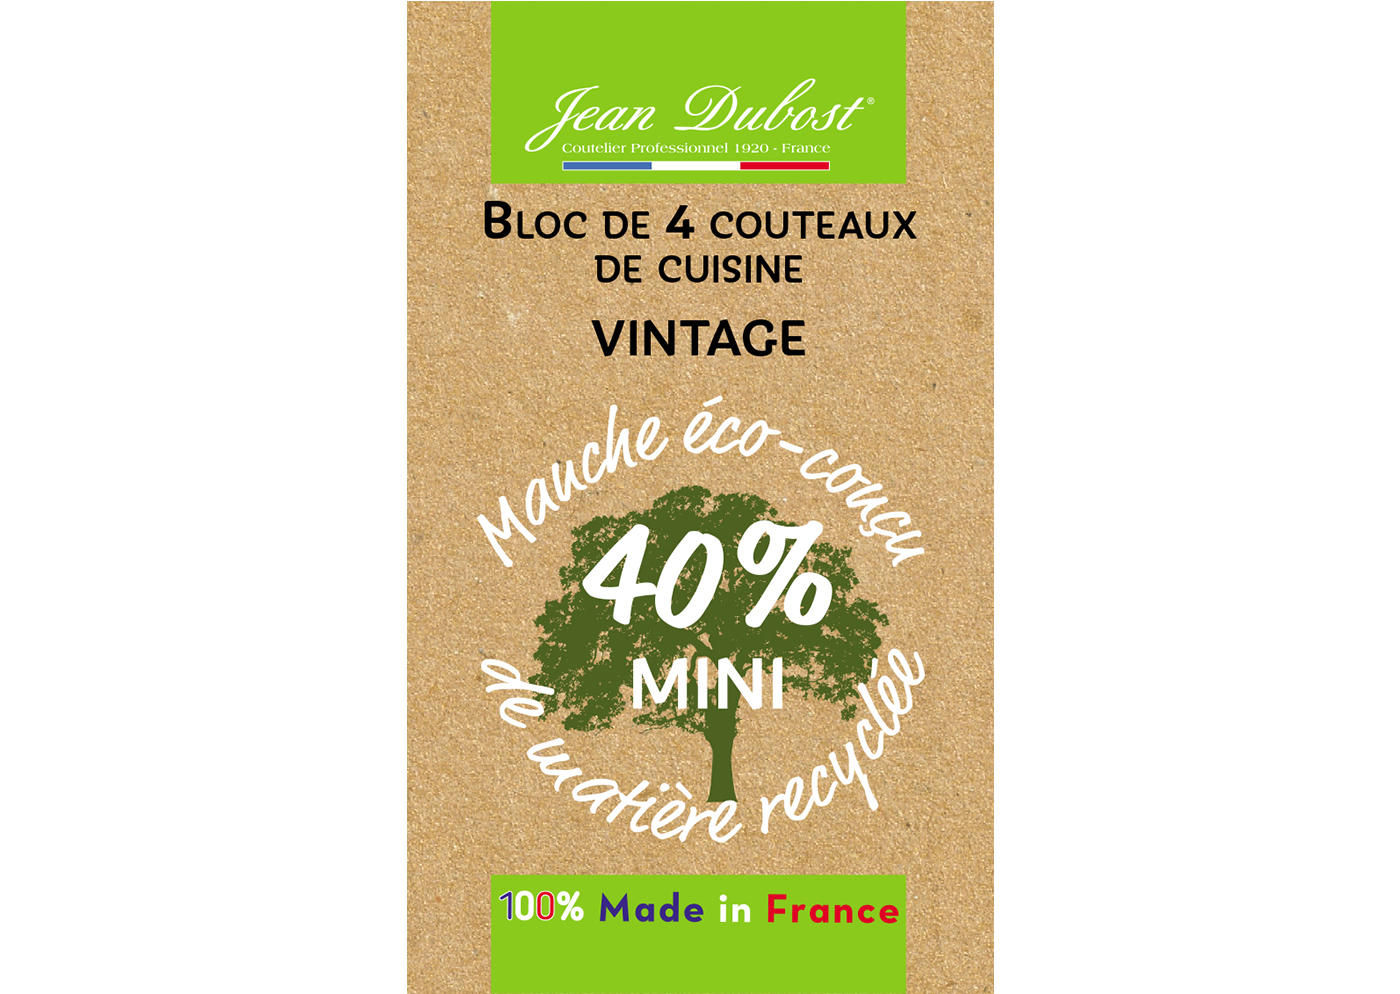 Bloc_4_couteaux_de_cuisine_Vintage_40_mini_1400x994